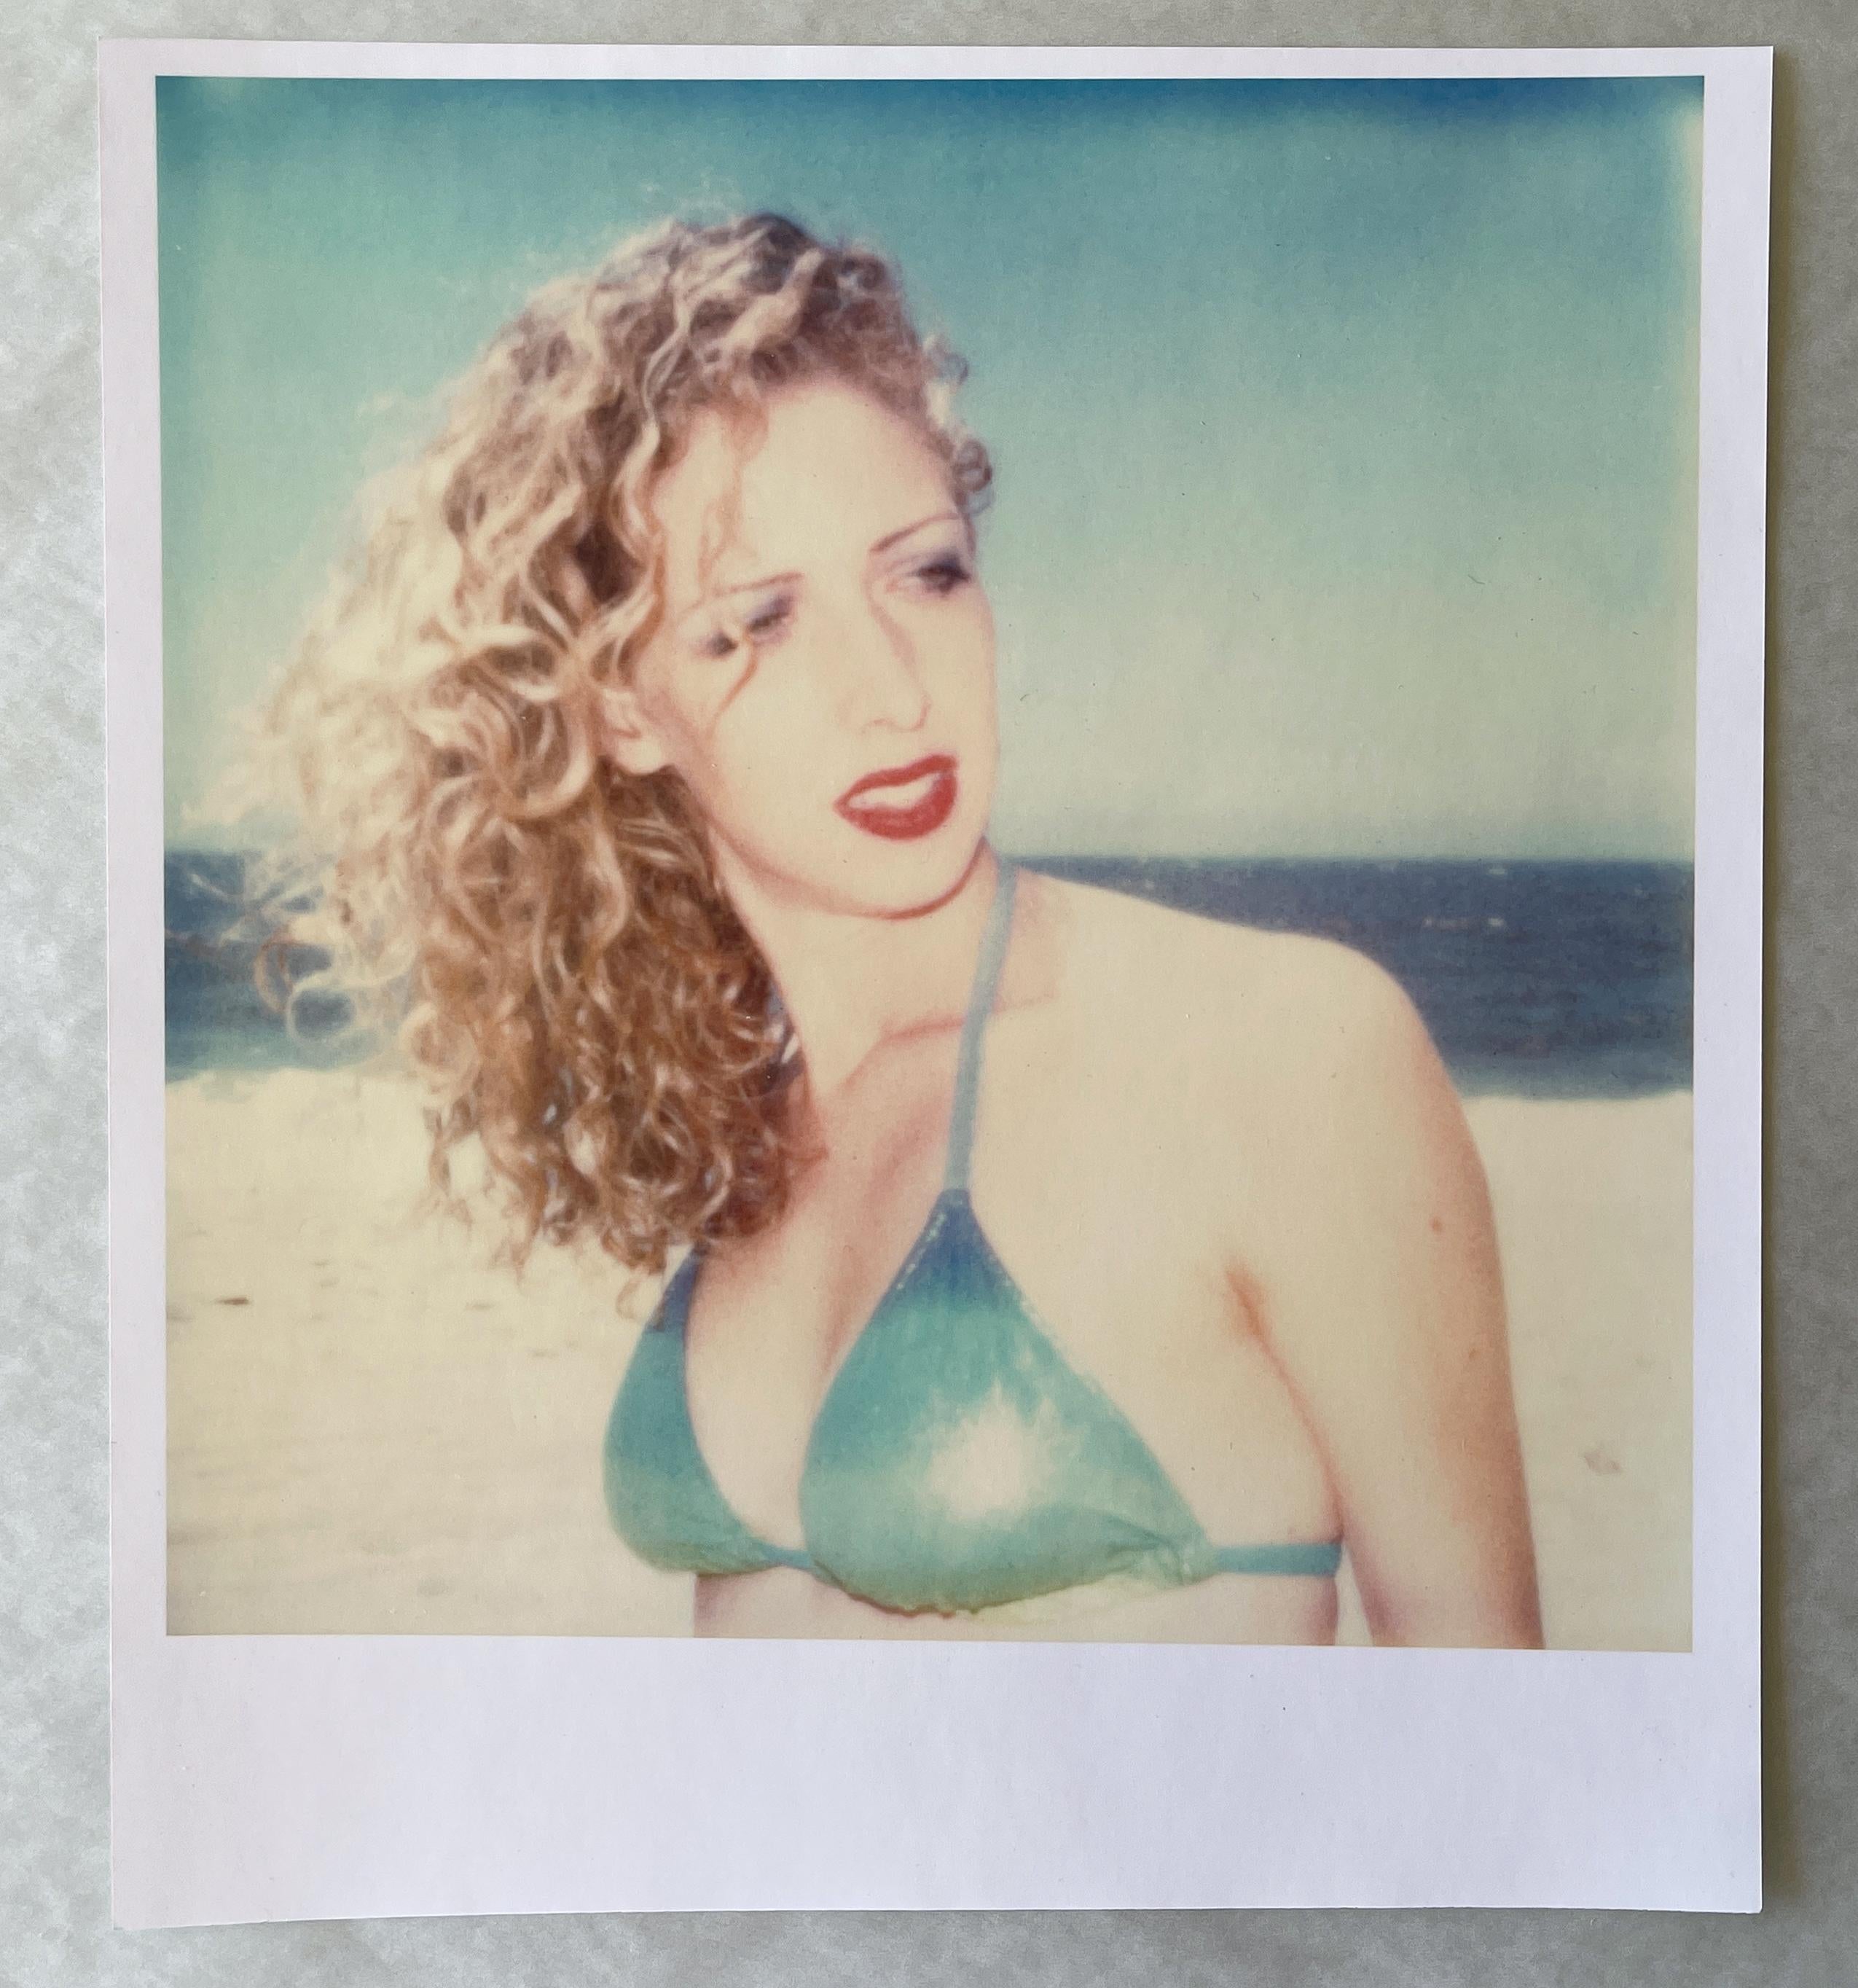 Kelly II (Beachshoot) - Contemporary, 21st century, Polaroid, Portrait - Photograph by Stefanie Schneider